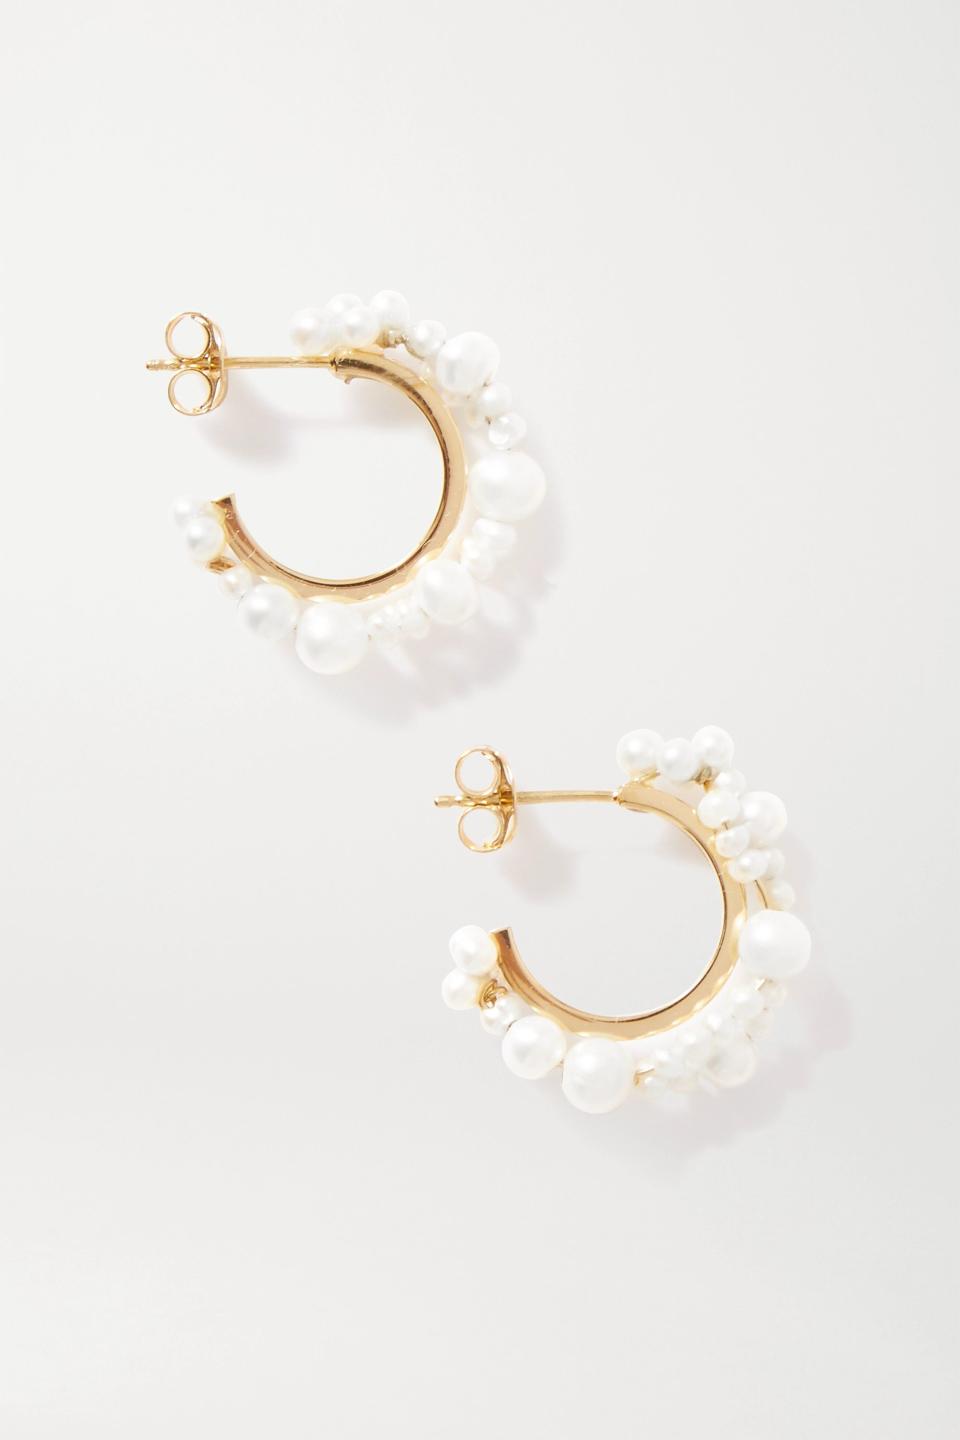 6) Stratus gold vermeil pearl earrings